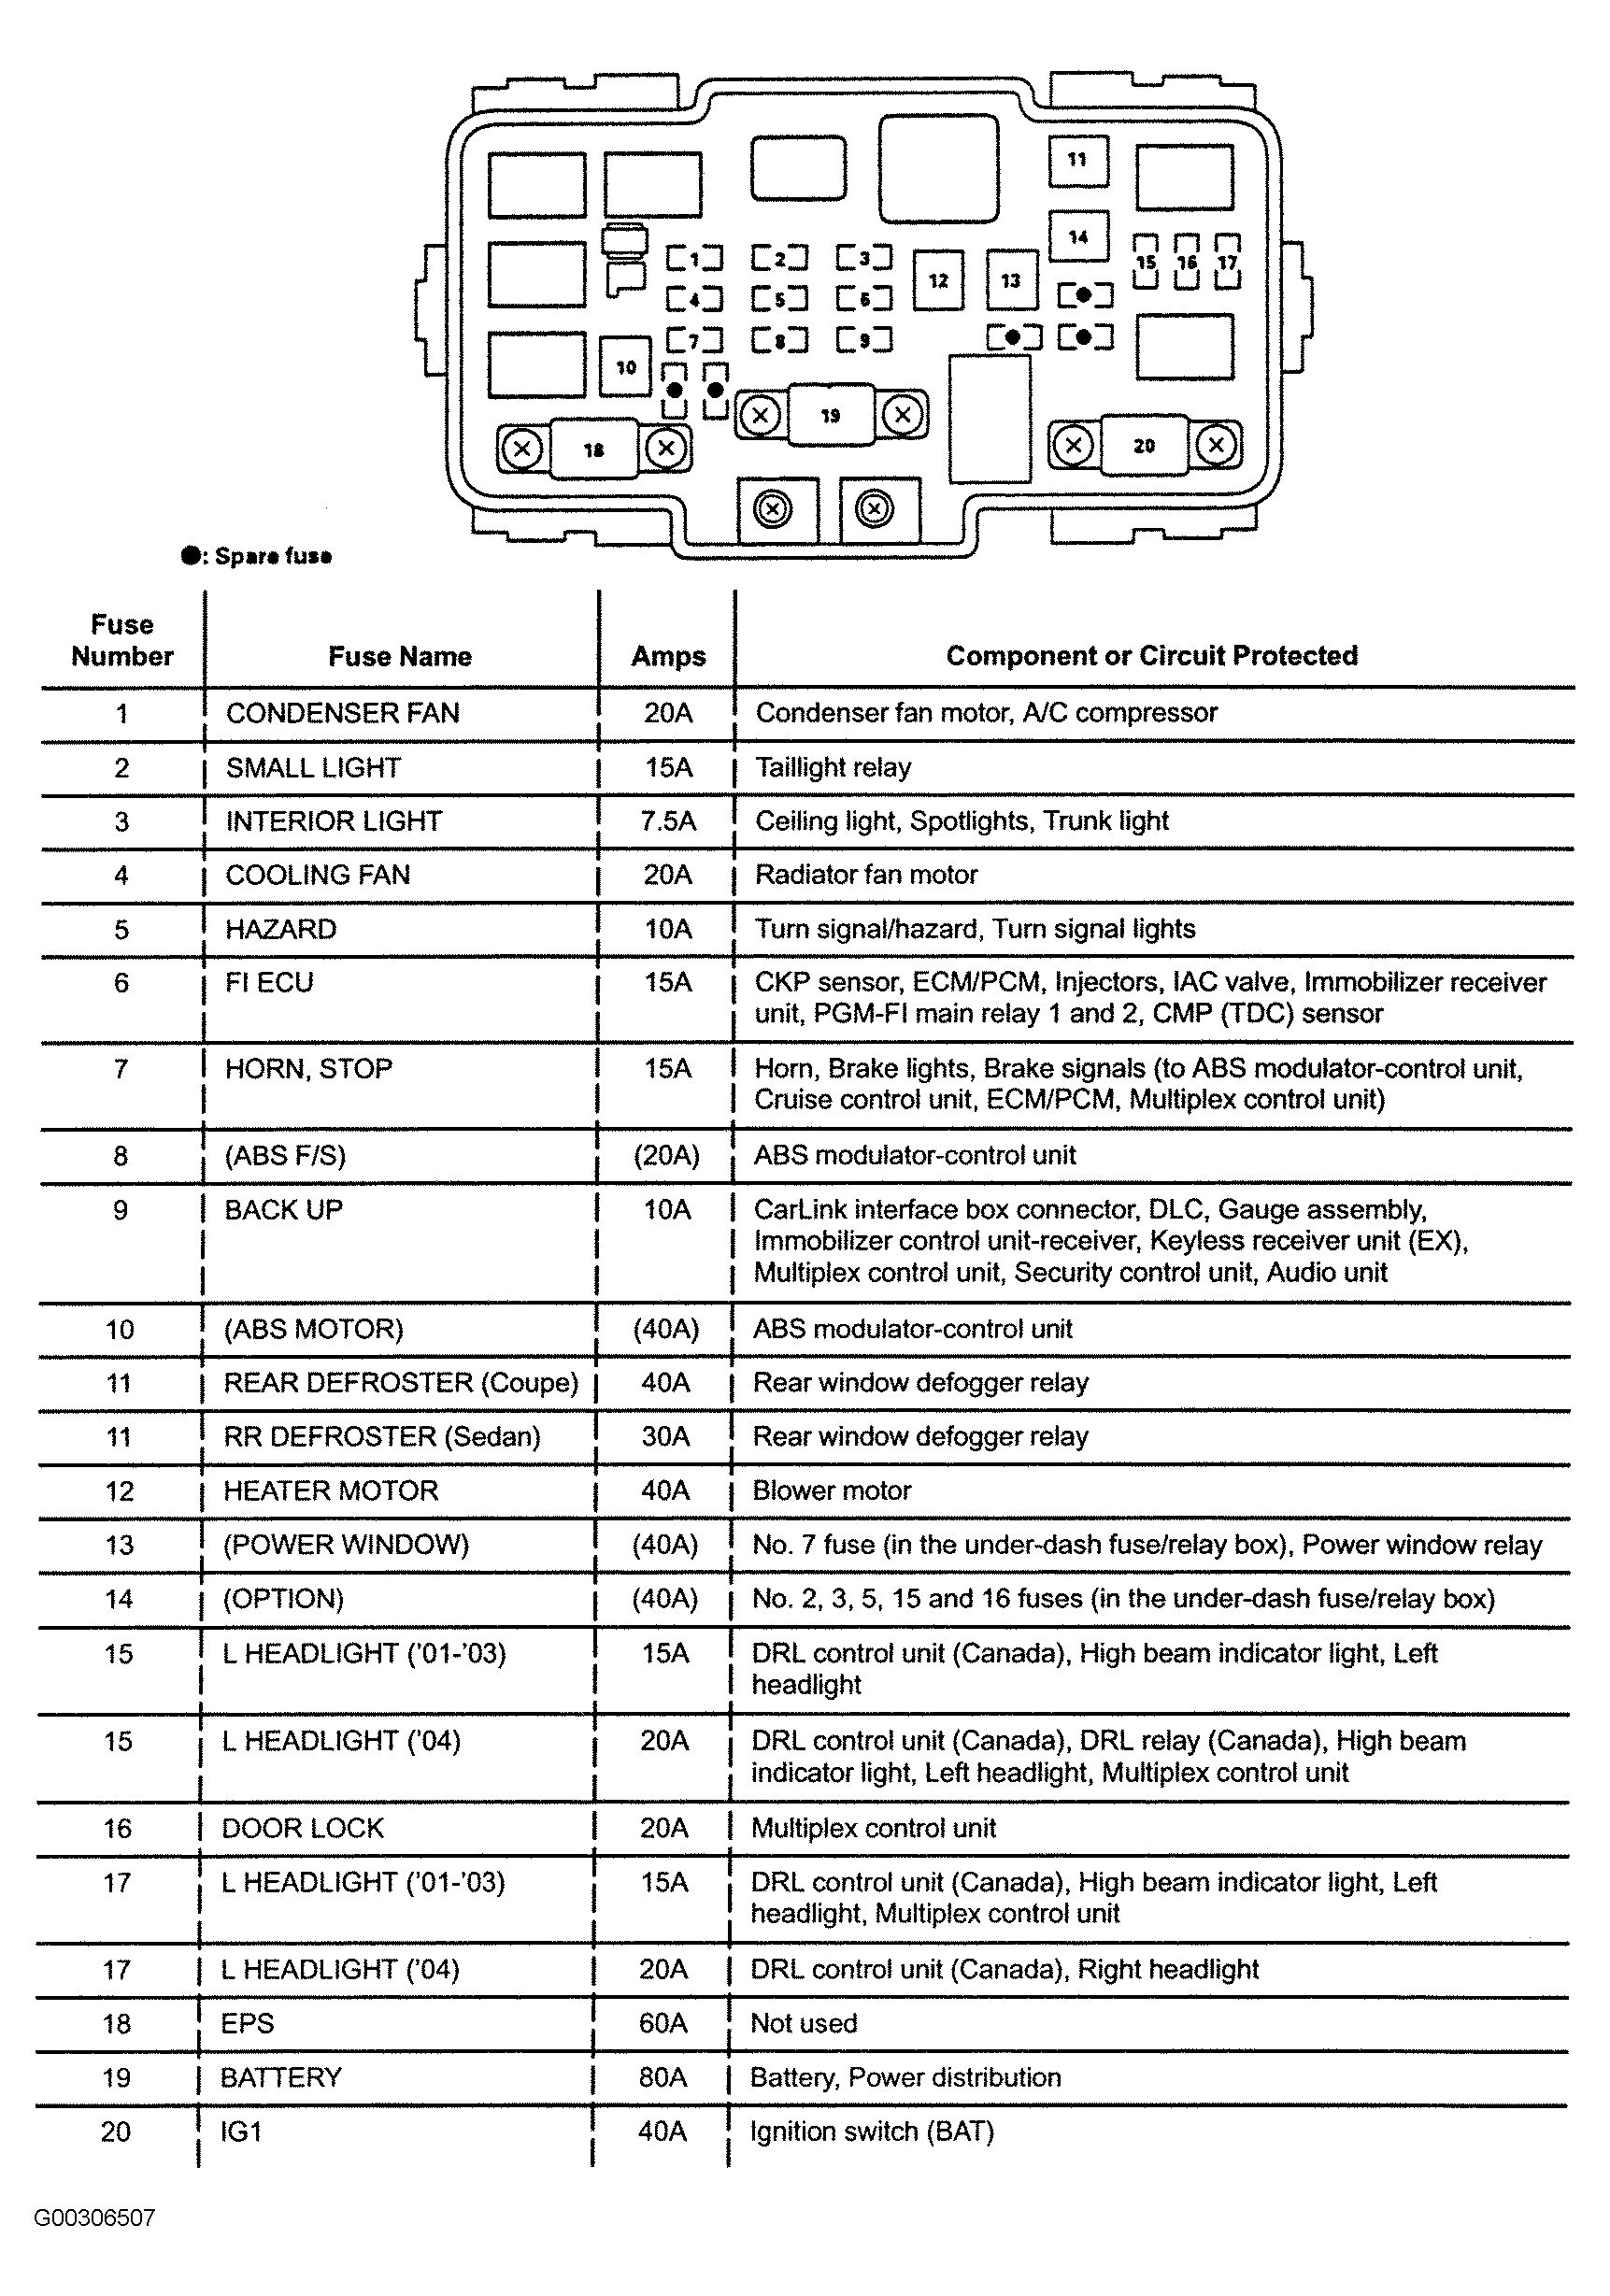 96 Honda Accord Engine Diagram 2006 Civic Engine Diagram Electrical Wiring Diagrams Of 96 Honda Accord Engine Diagram